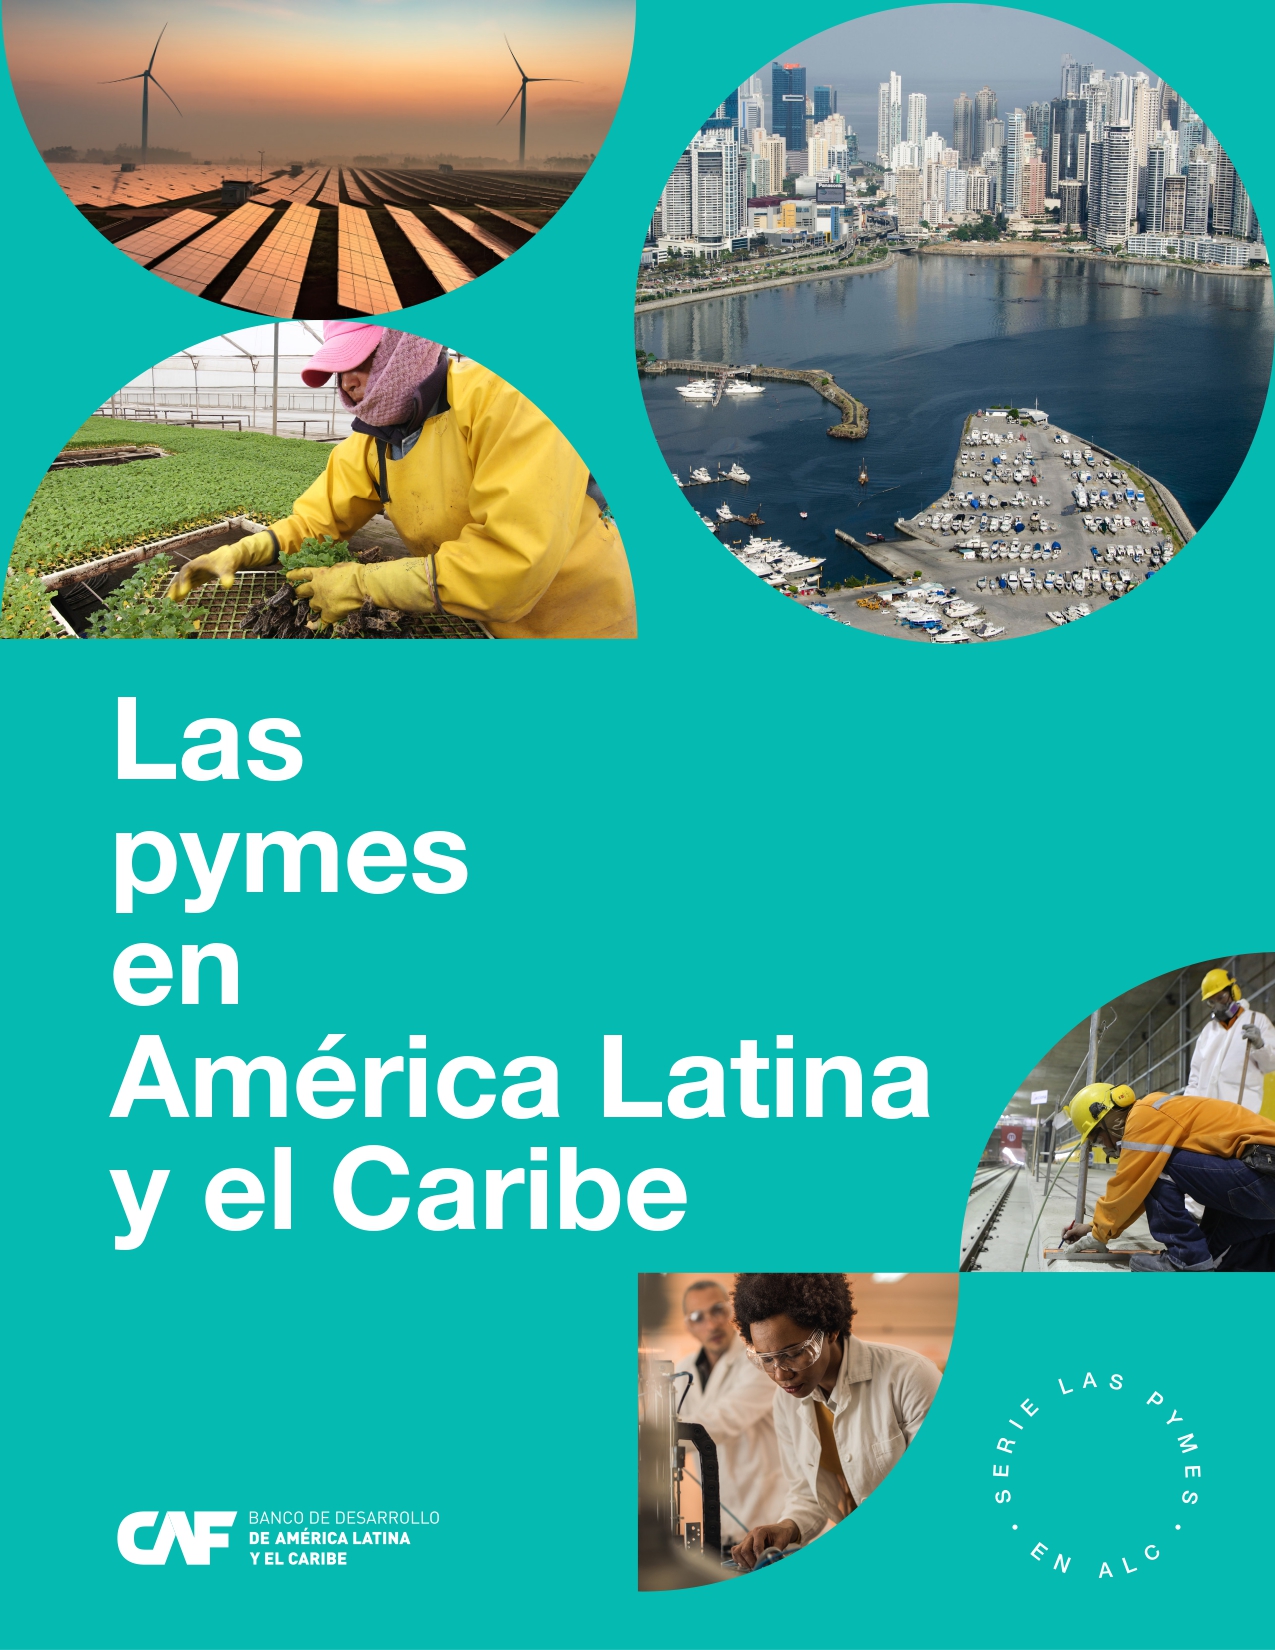 Las pymes en América Latina y el Caribe